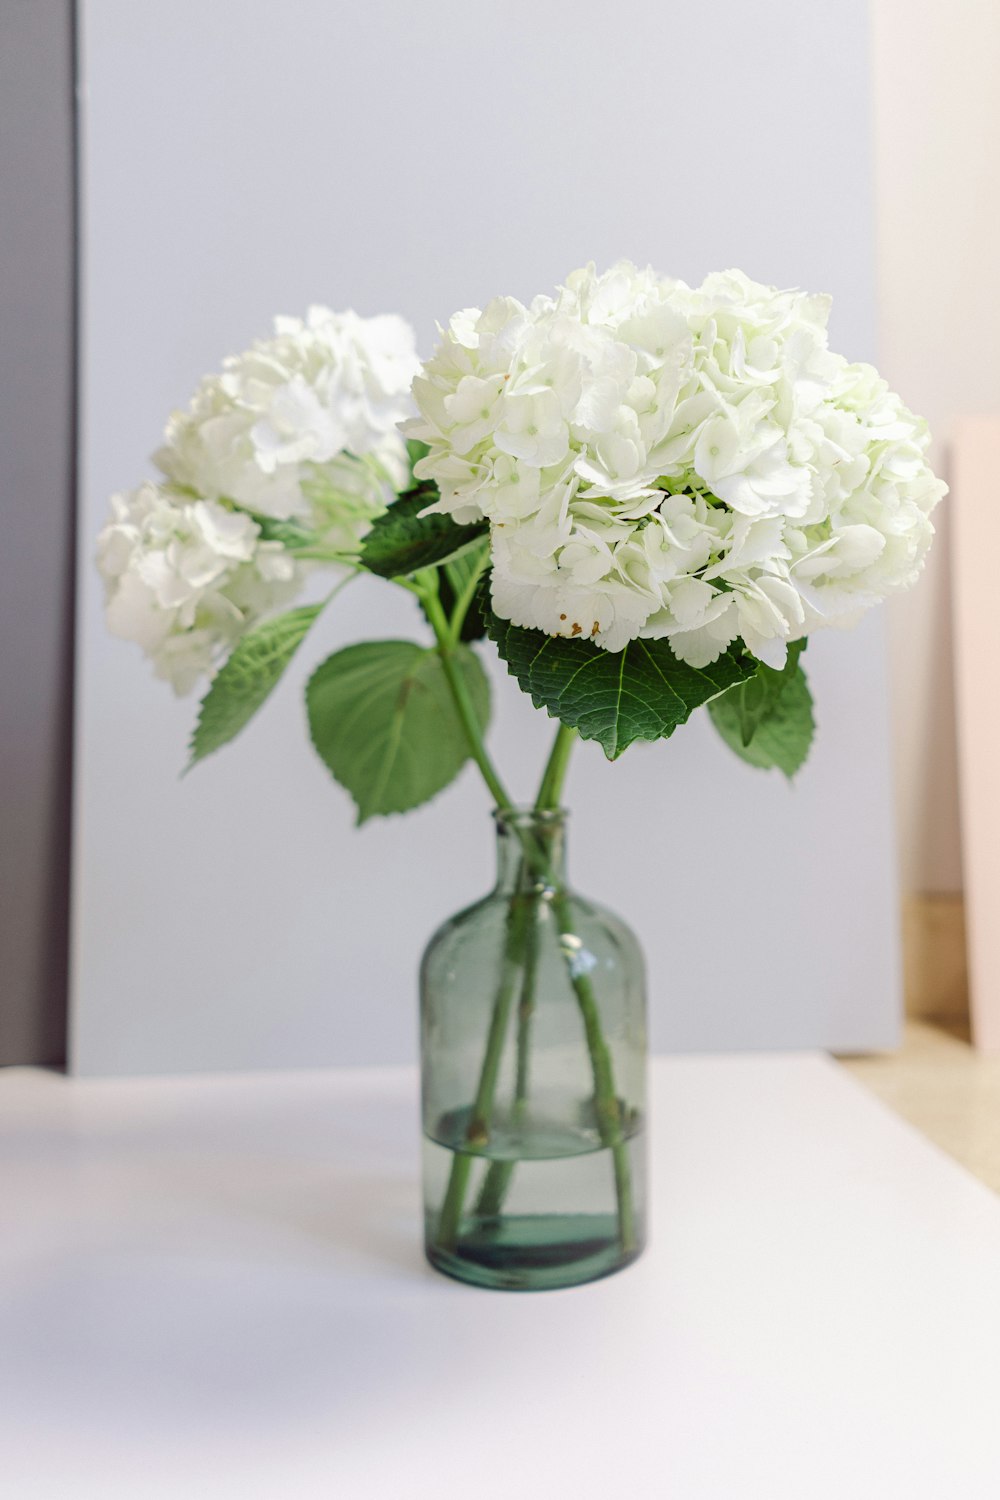 white flowers in green glass vase